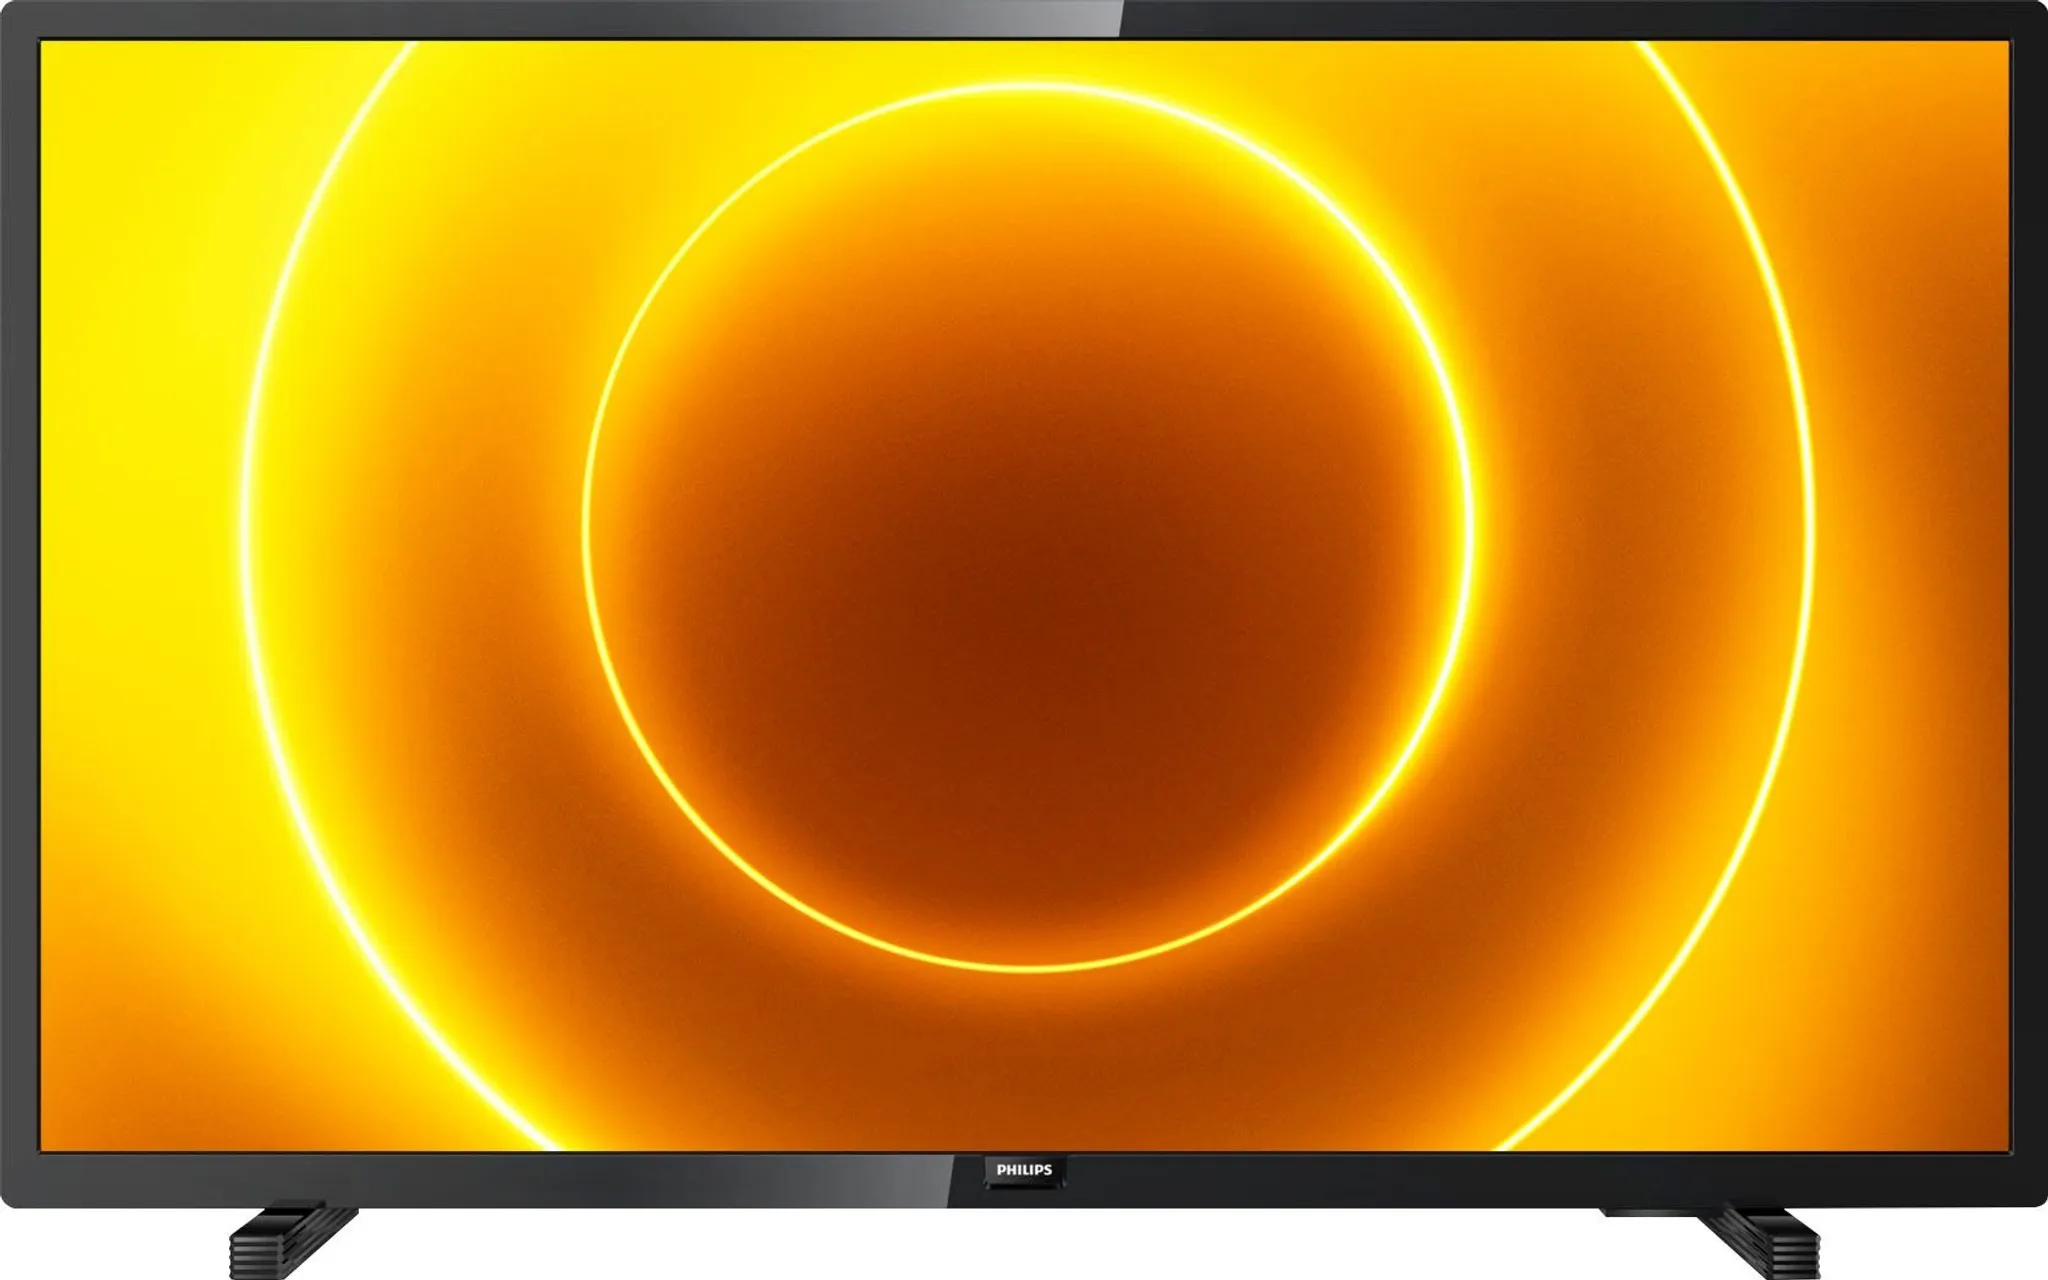 Philips HD LED TV 80cm (32 Zoll) 32PHS5505